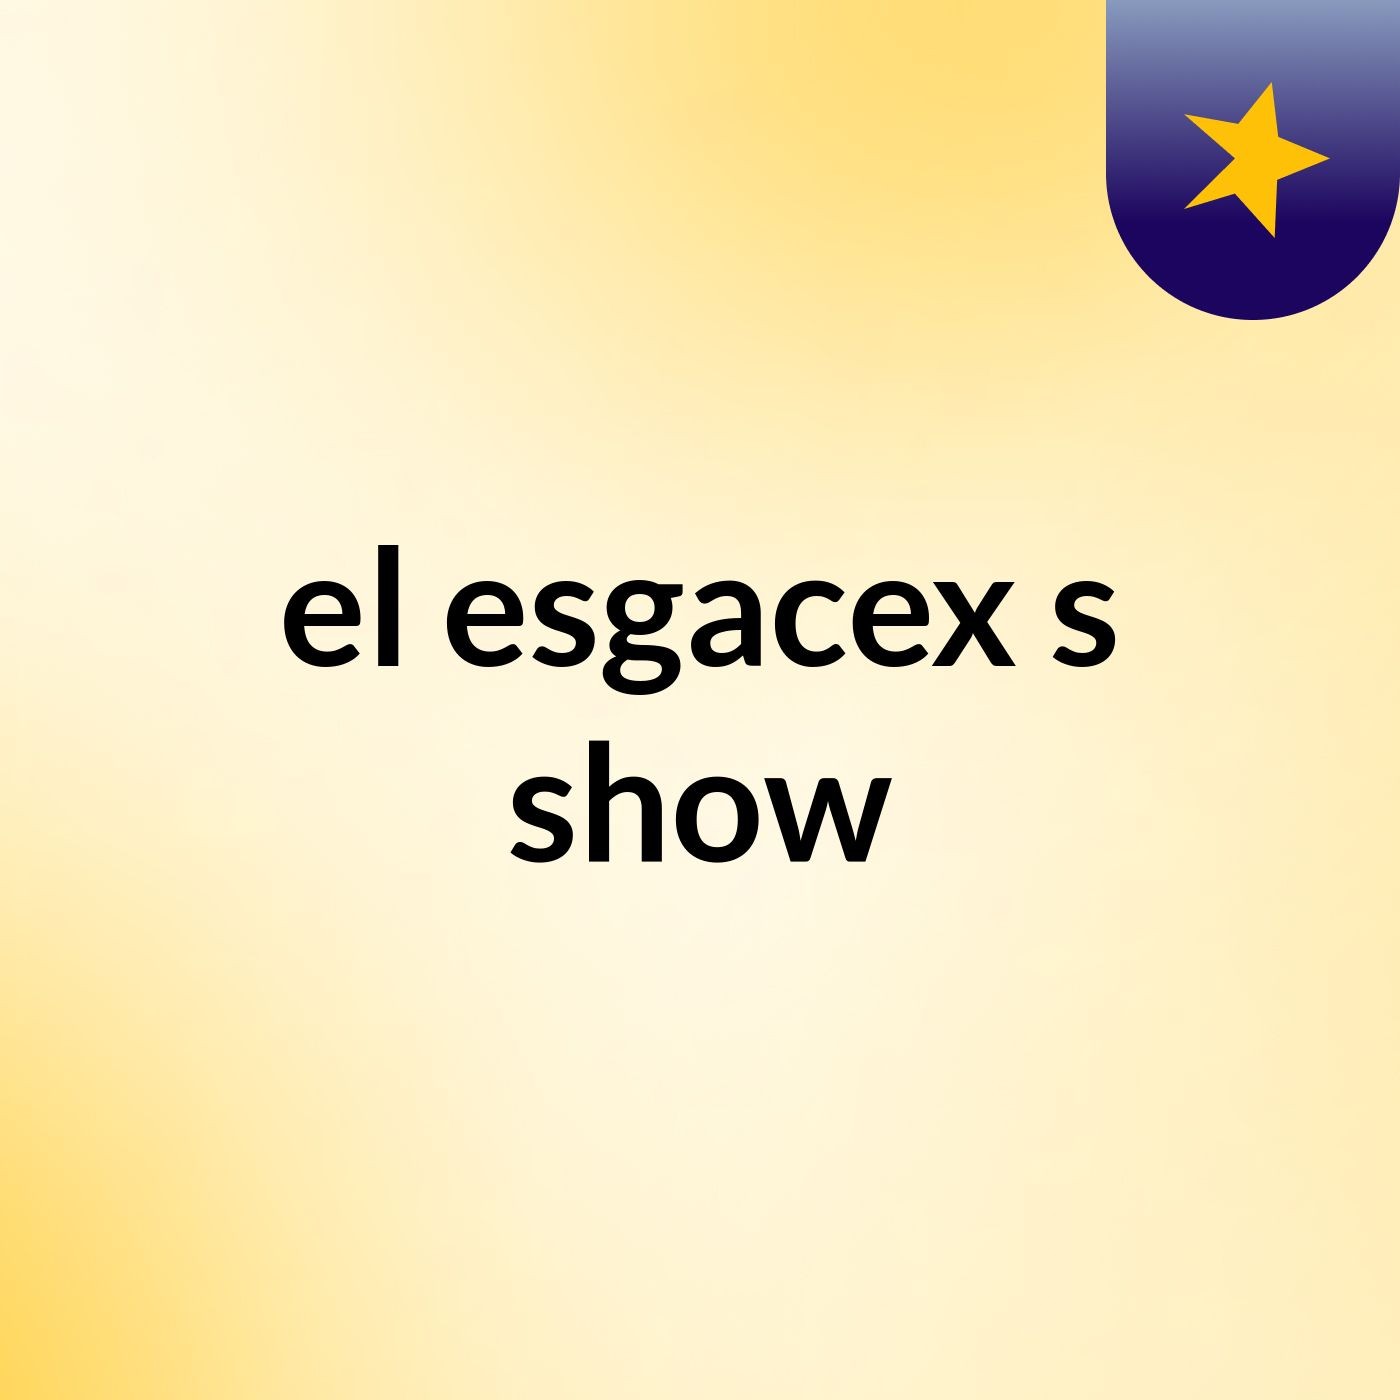 el esgacex's show